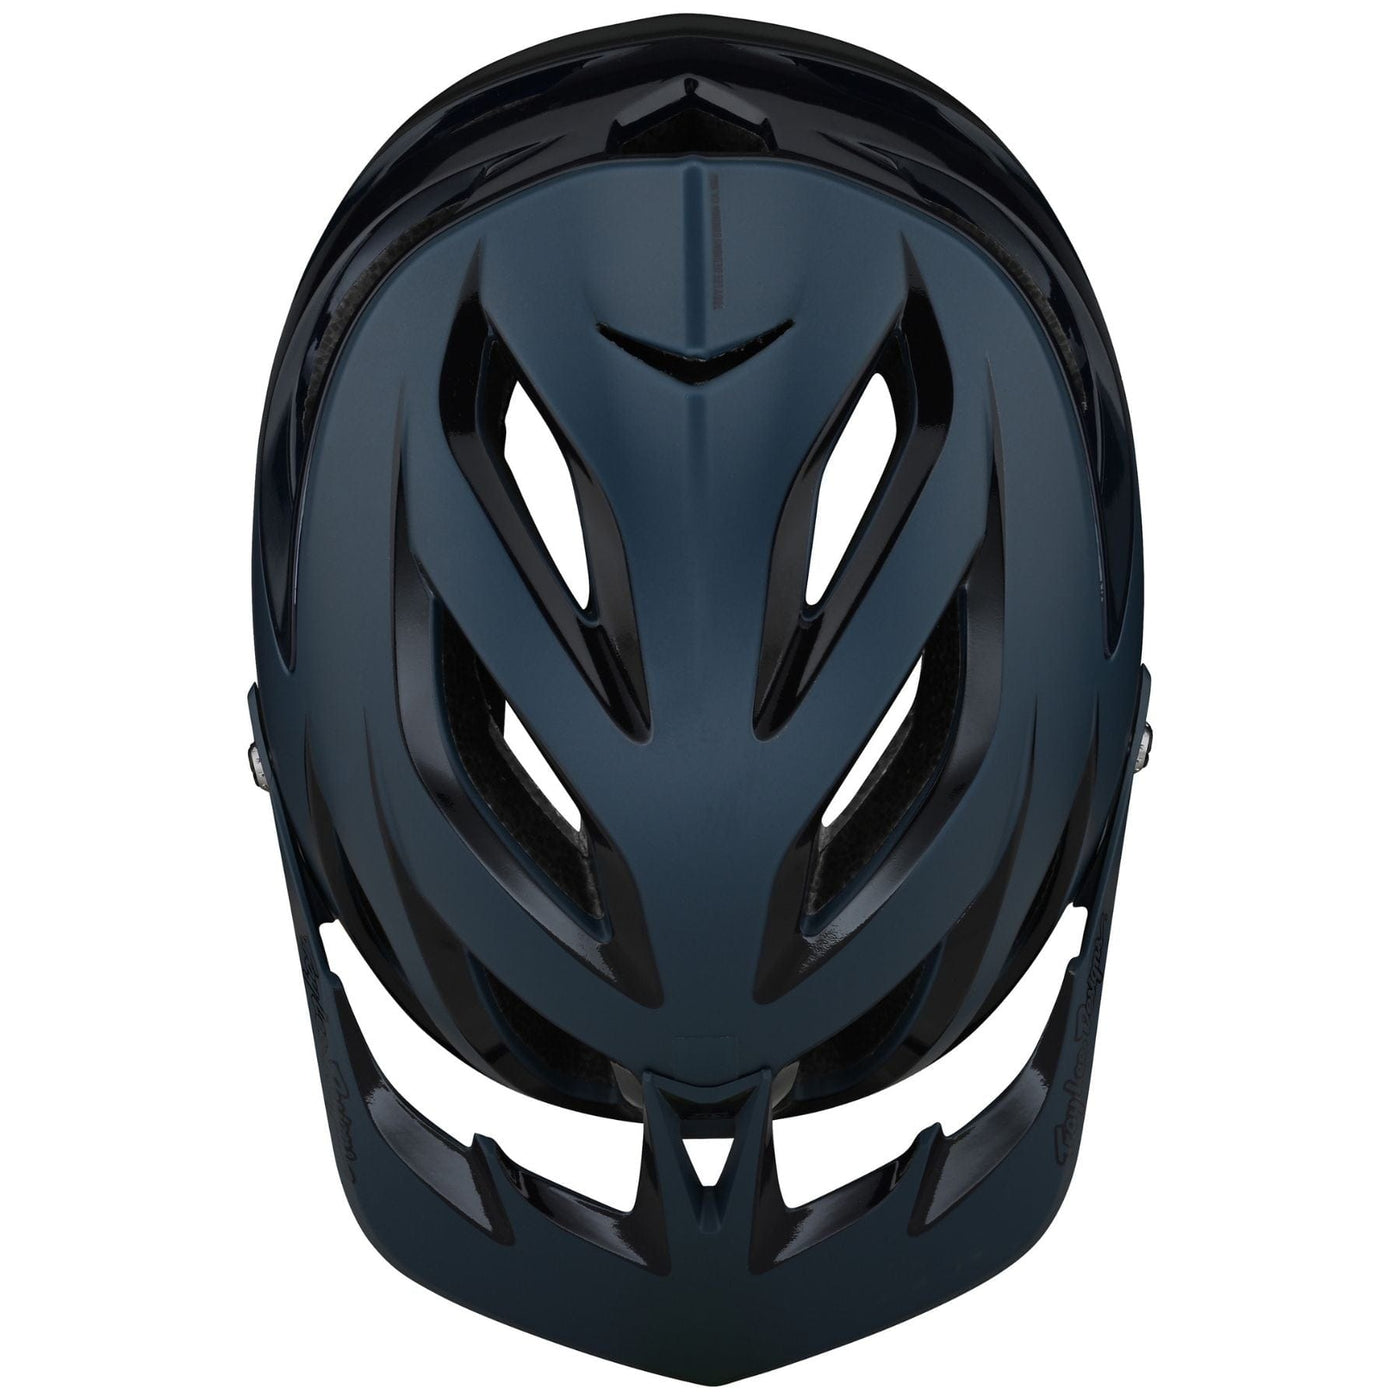 Troy Lee Designs A3 MIPS Helmet Uno - Slate Blue